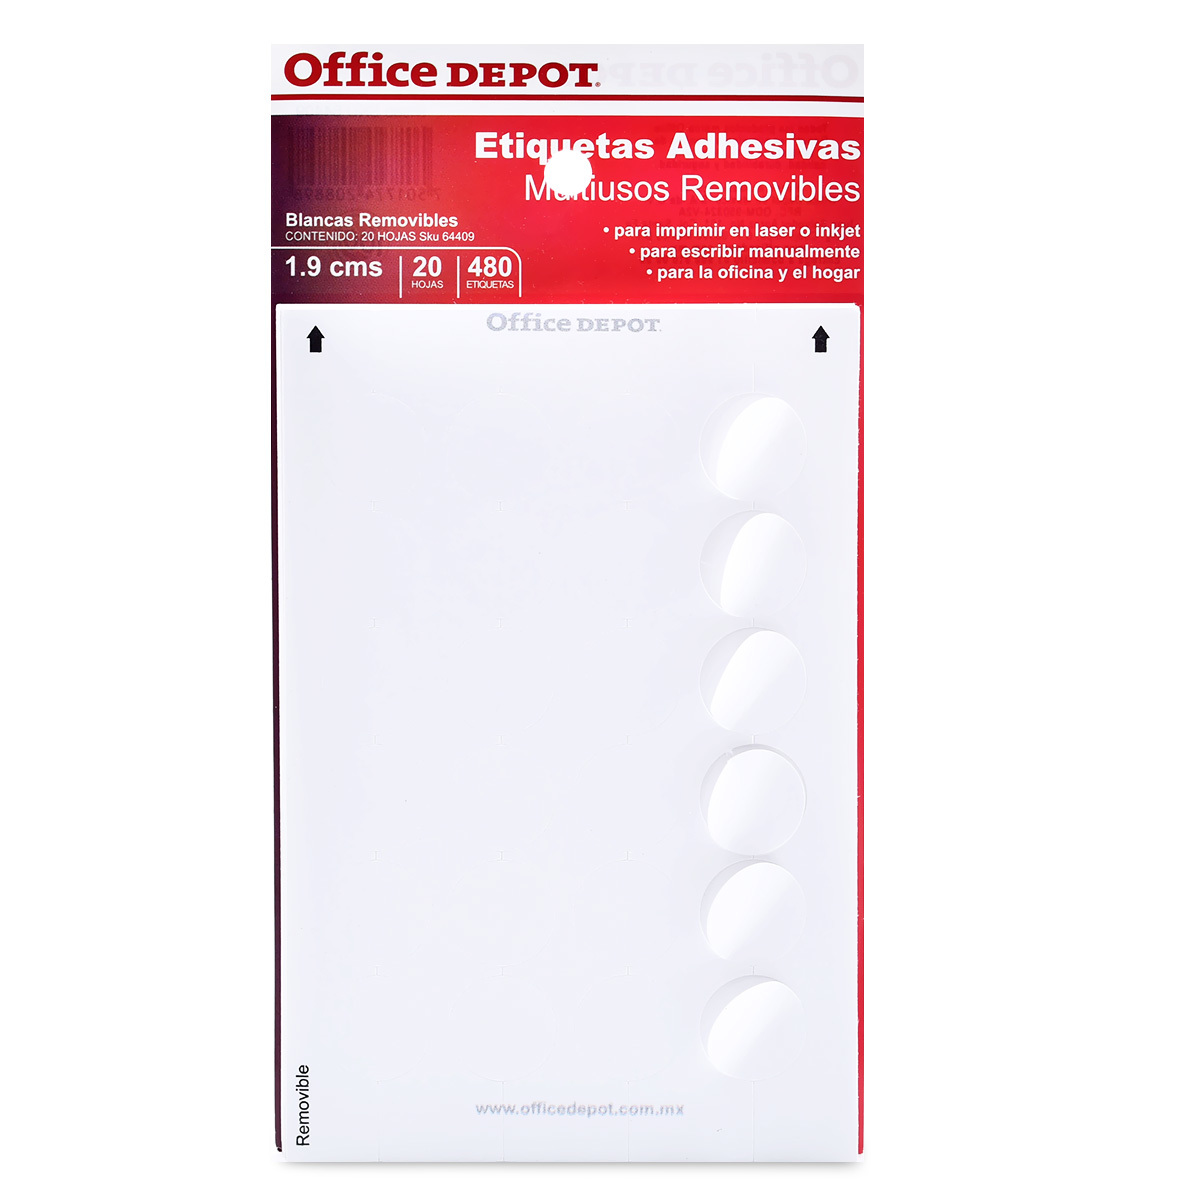 Etiquetas Adhesivas Removibles Circulares Office Depot / 1.9 cm / Blanco / 480 etiquetas